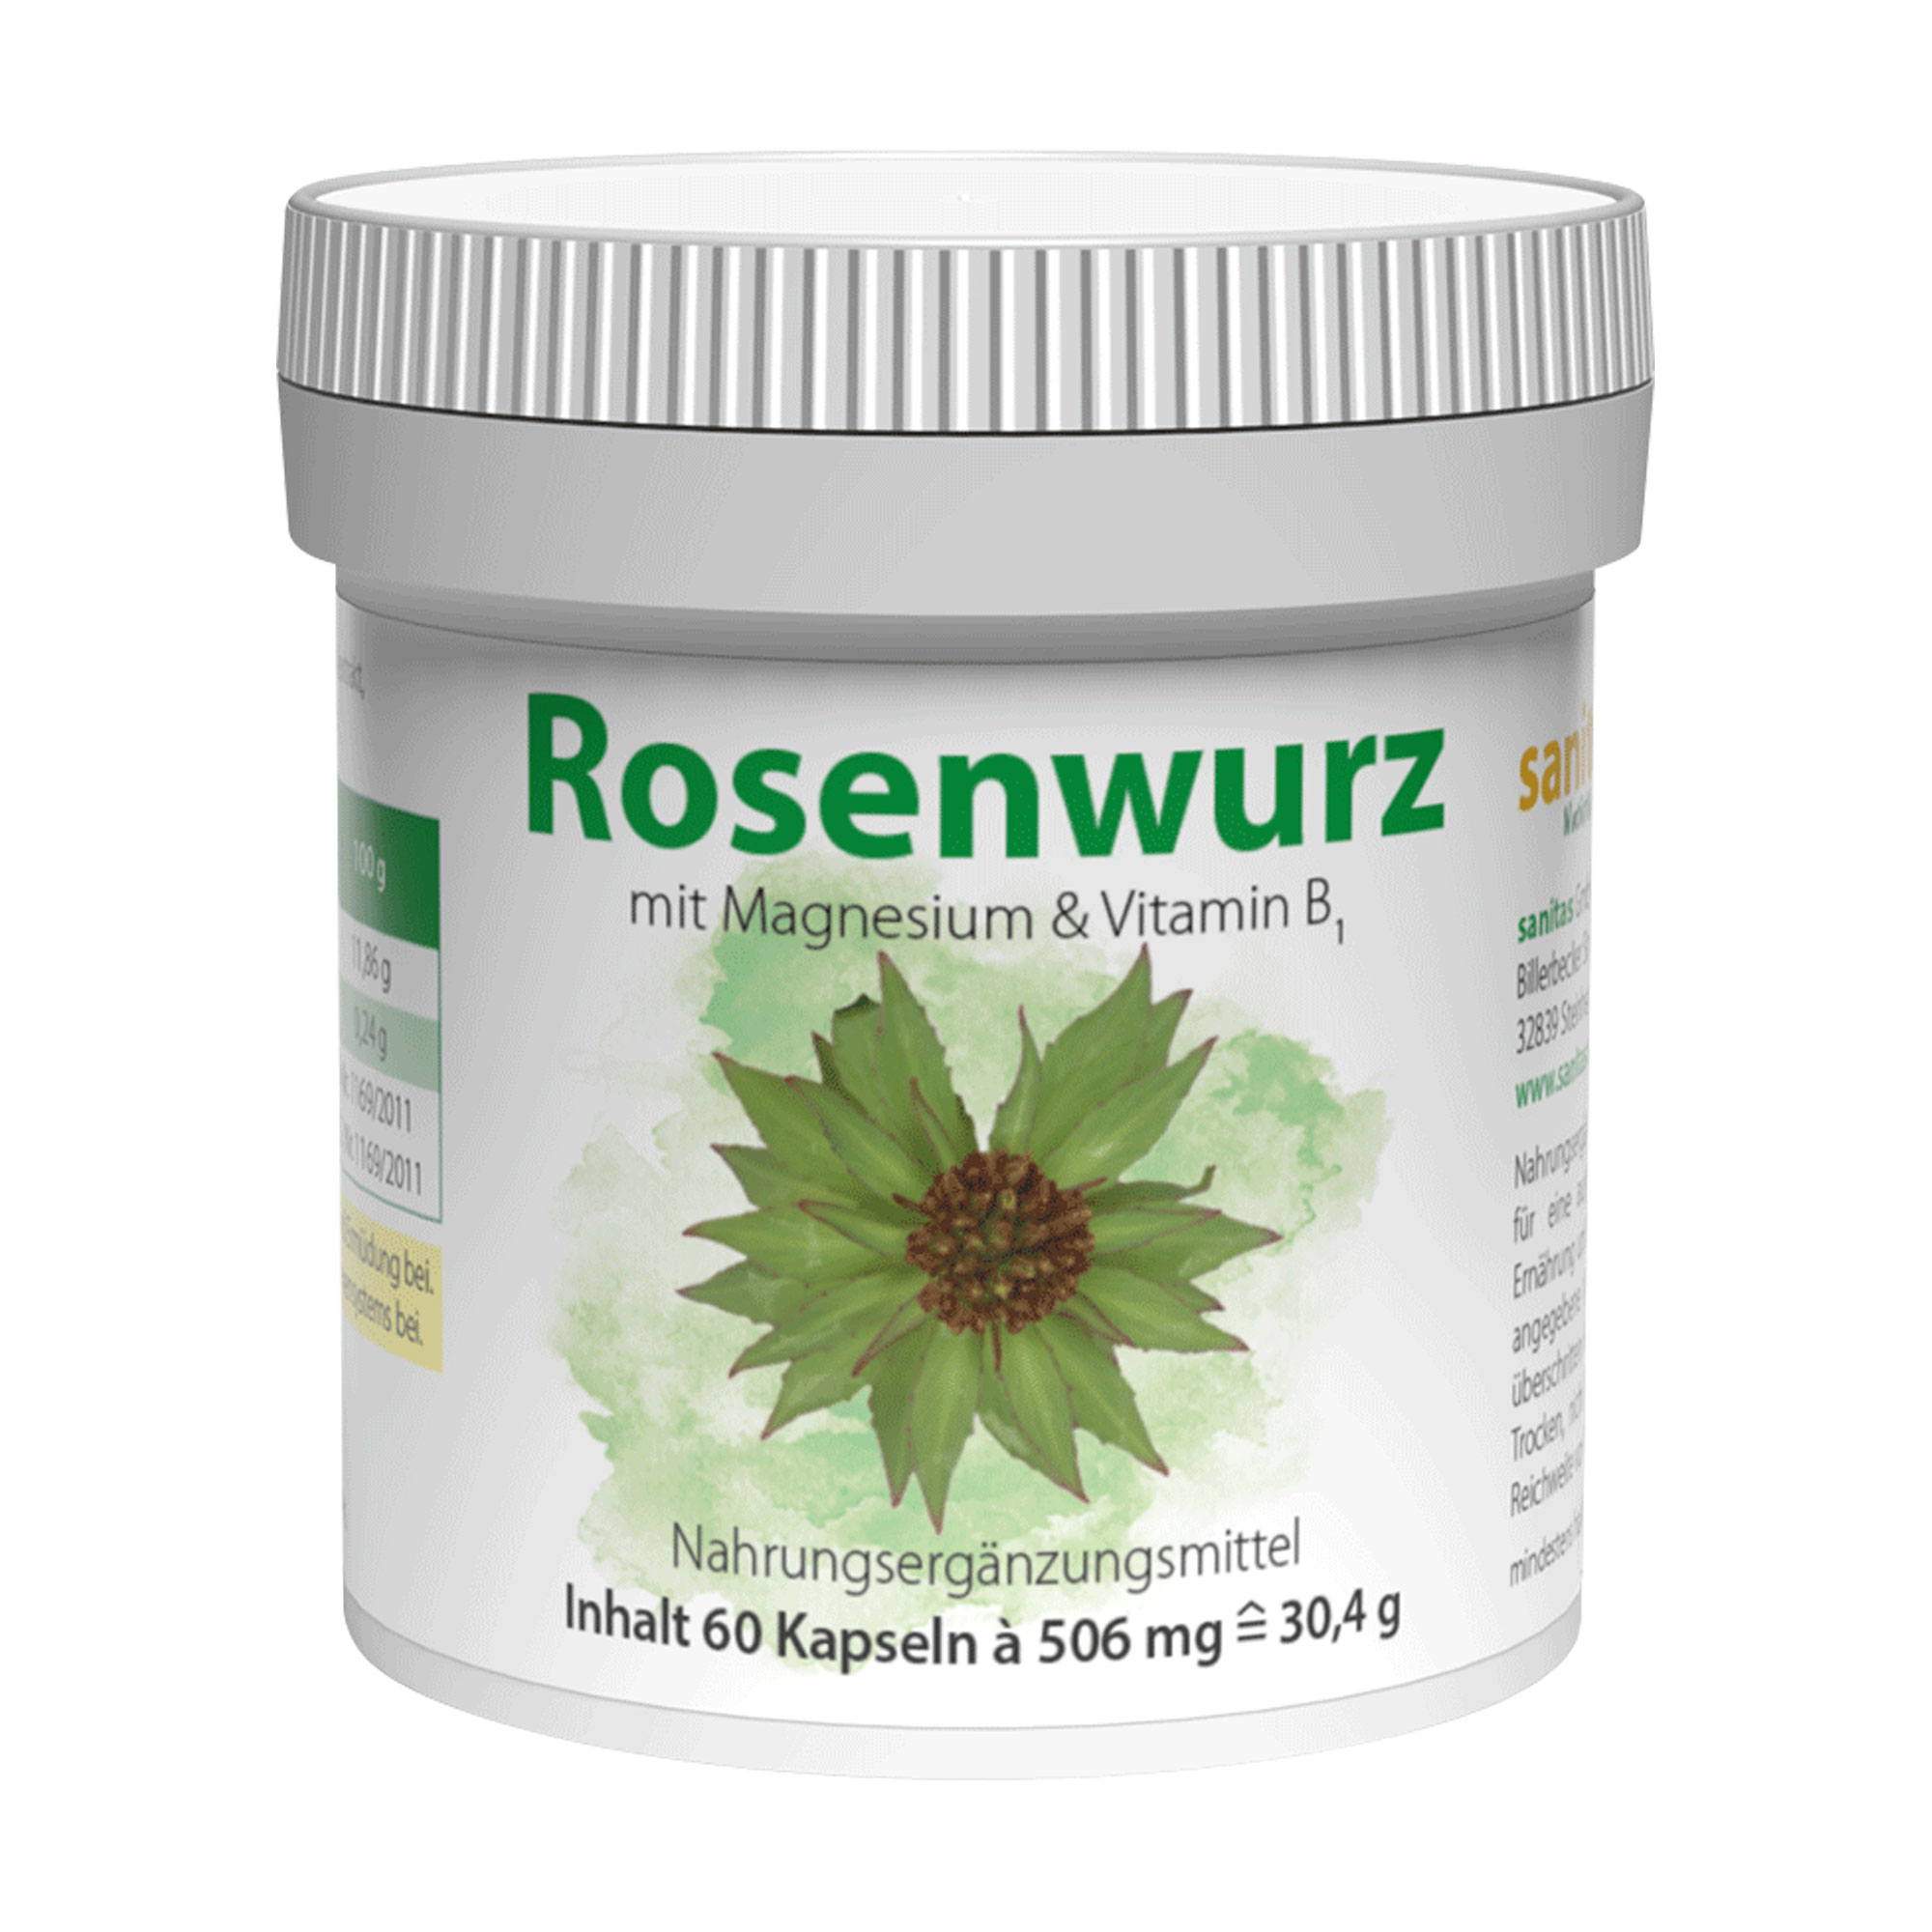 Nahrungsergänzungsmittel mit Rosenwurzextrakt (Rhodiola rosea), Magnesium und Vitamin B1.